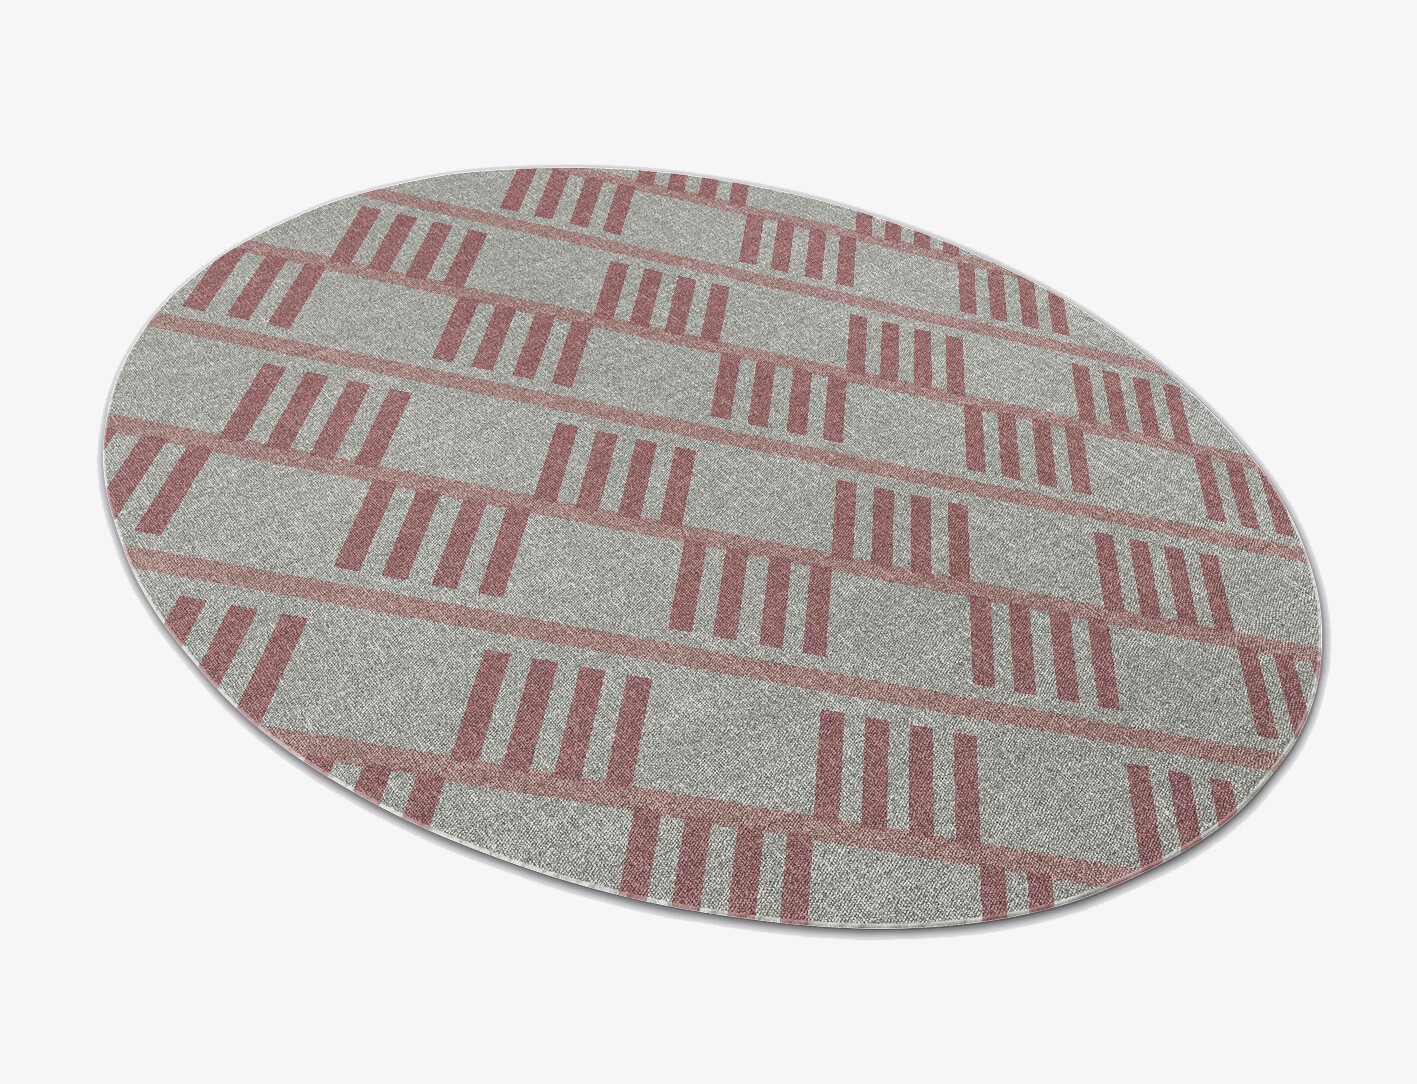 Klaue Geometric Oval Outdoor Recycled Yarn Custom Rug by Rug Artisan